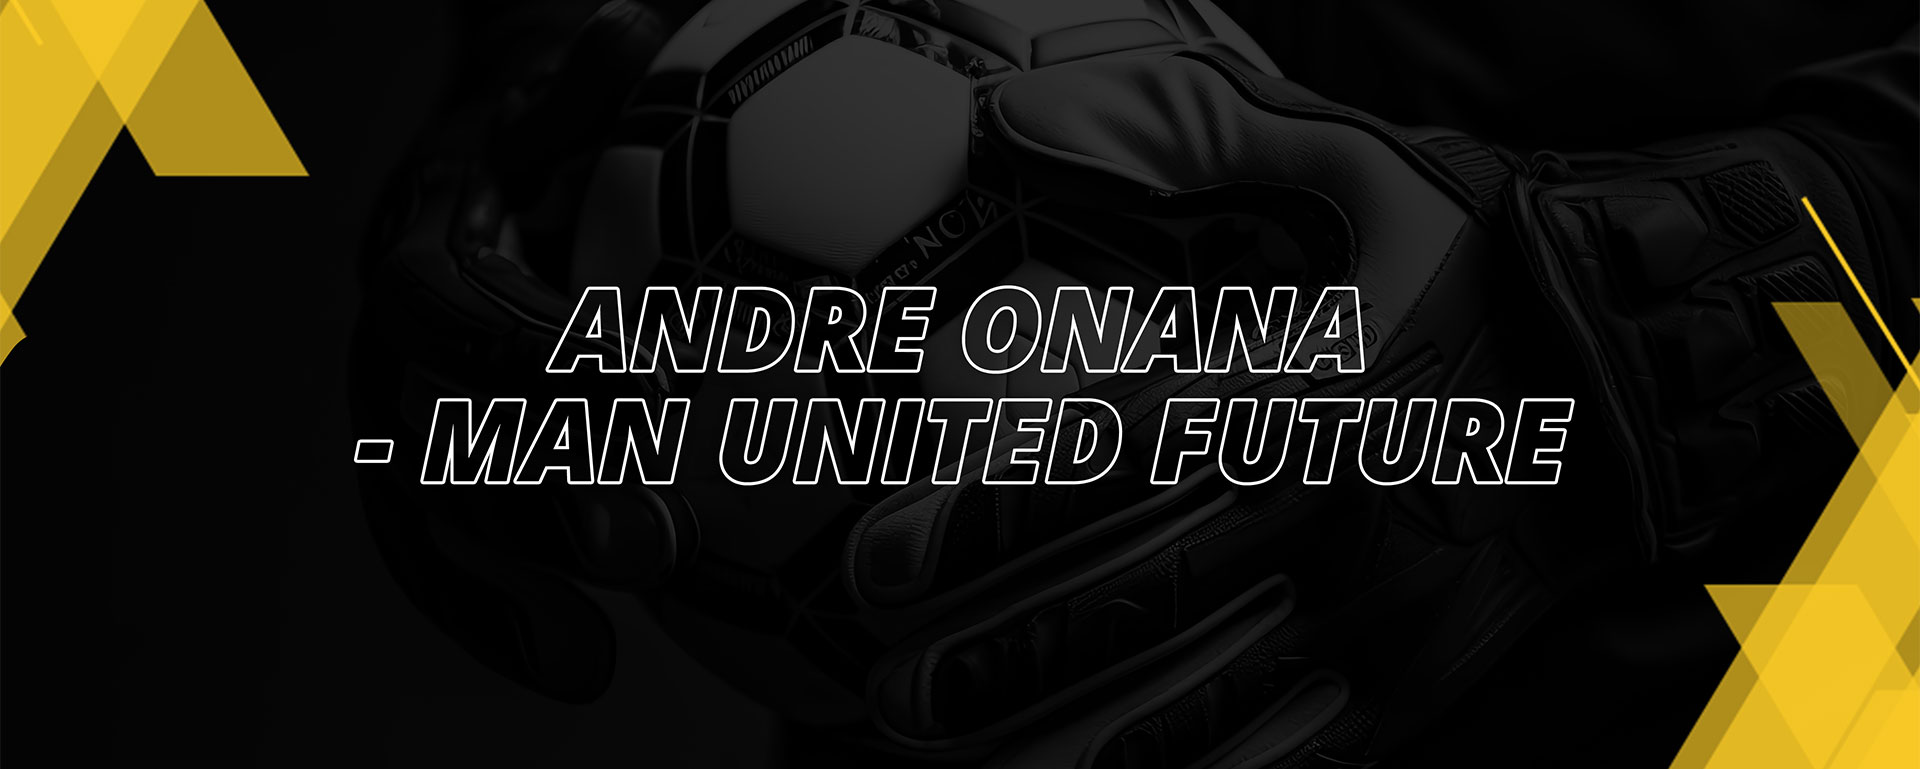 Andre Onana – Man United Future